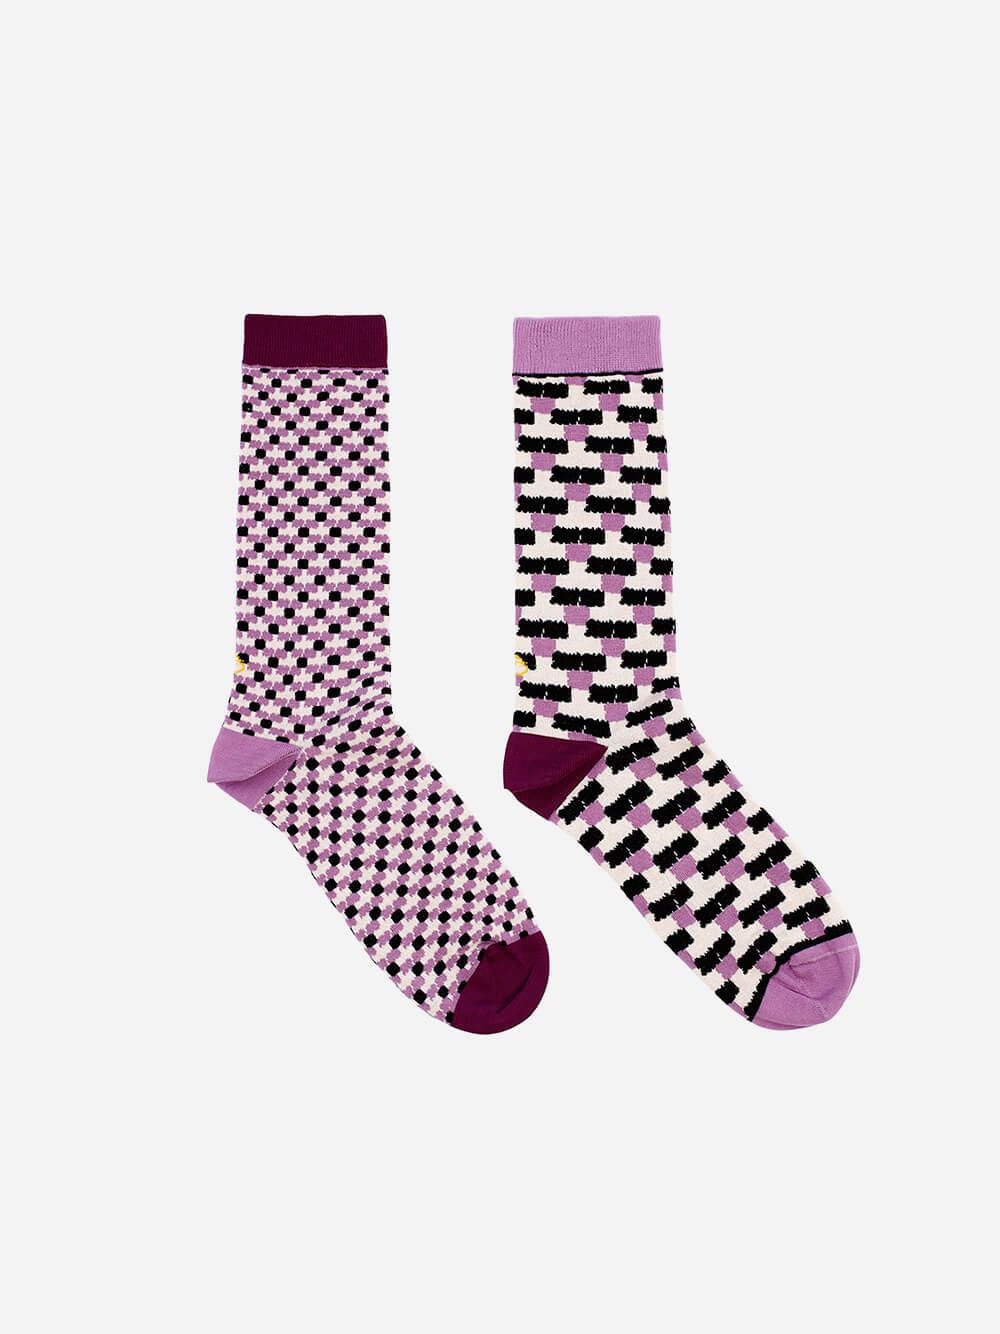 Trios Socks | Lolo Carolo